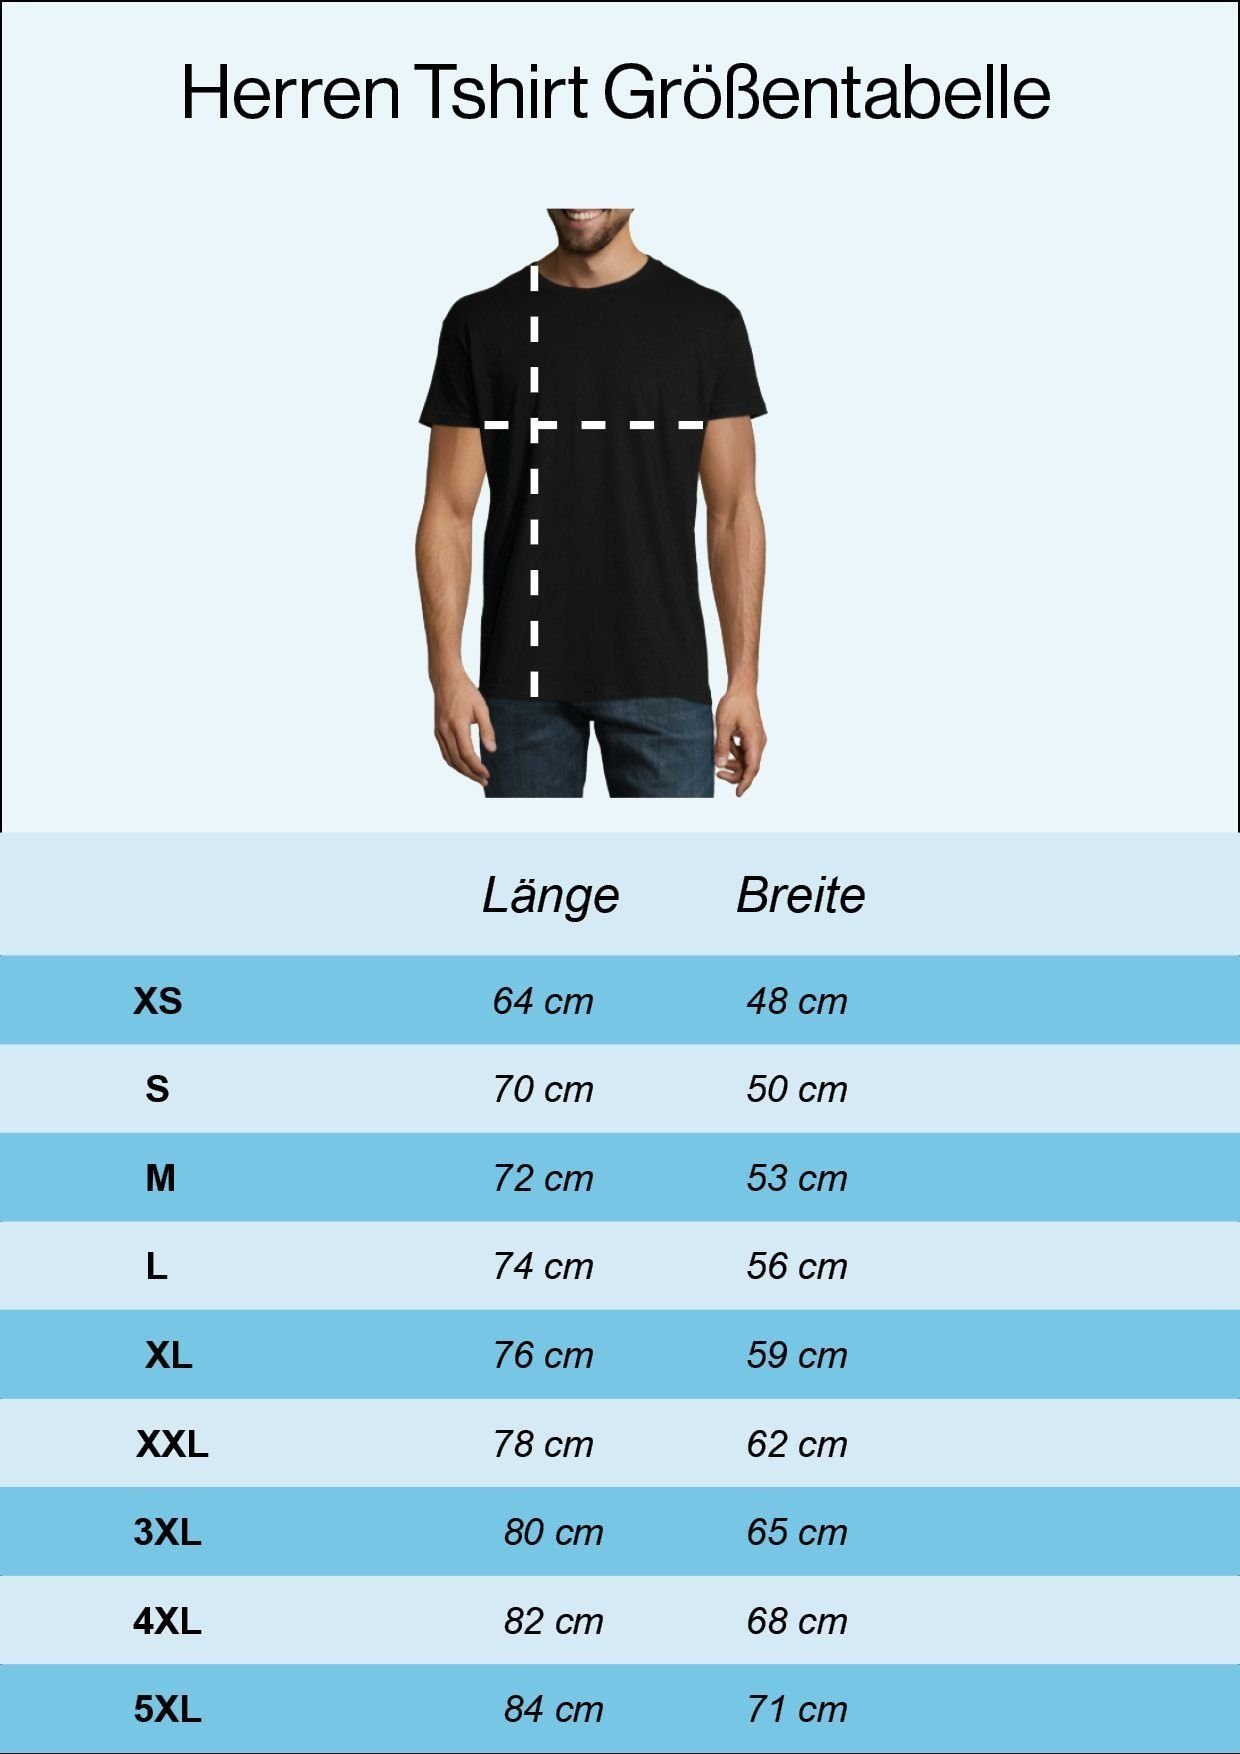 Youth Ein zu Navyblau lustigem T-Shirt Ihn Spruch Herren Print-Shirt Designz Knechten mit Ring